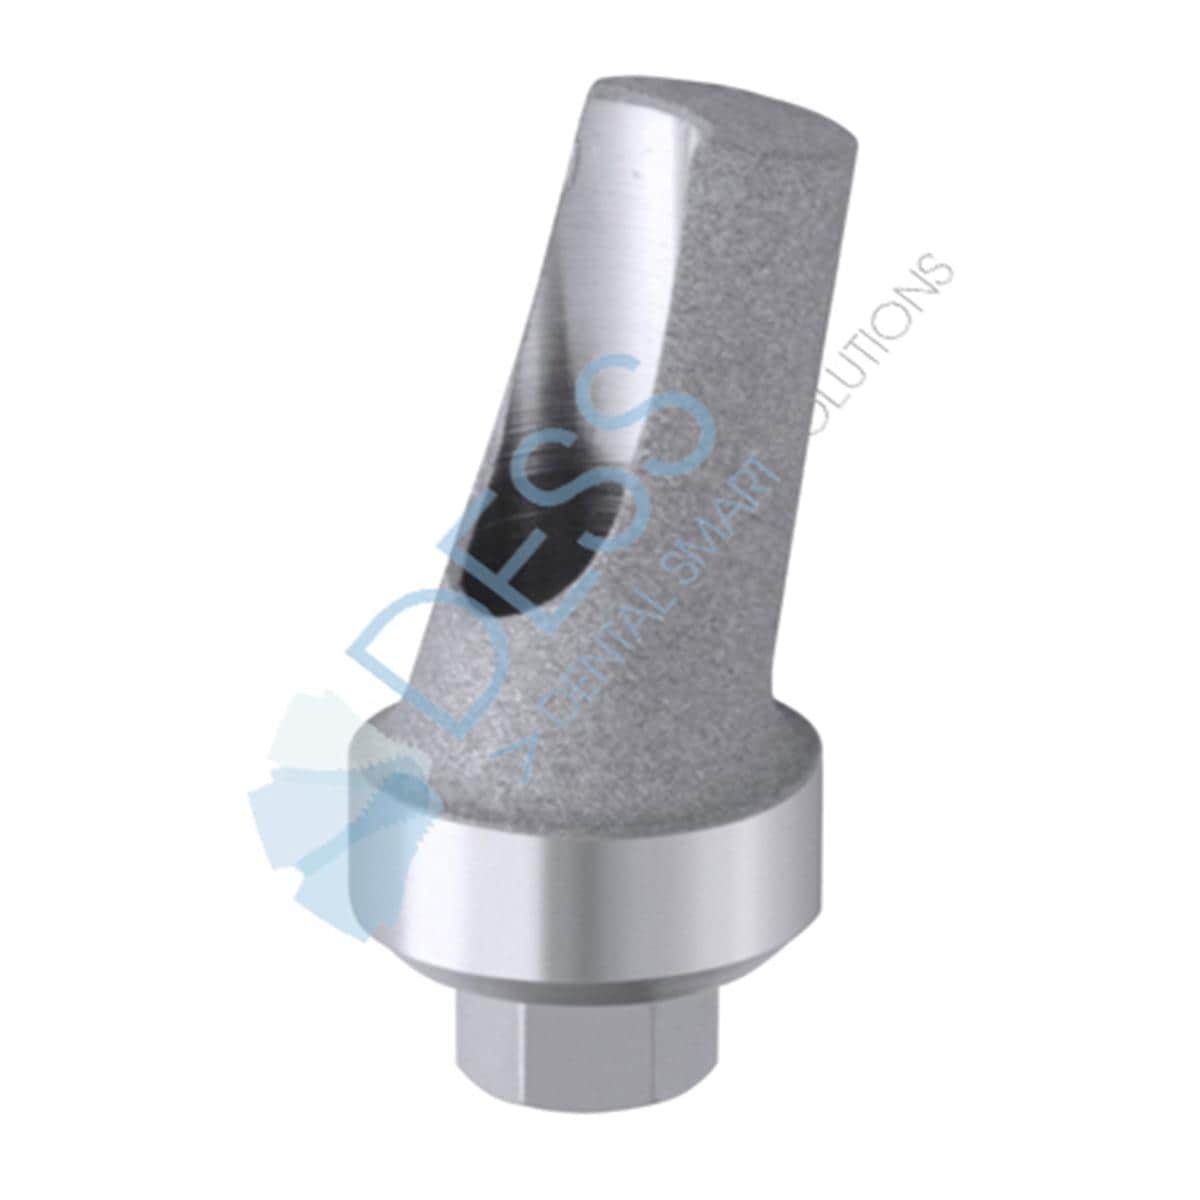 Titanabutment - kompatibel mit Zimmer Screw-Vent® - RP Ø 4,5 mm, 15° gewinkelt